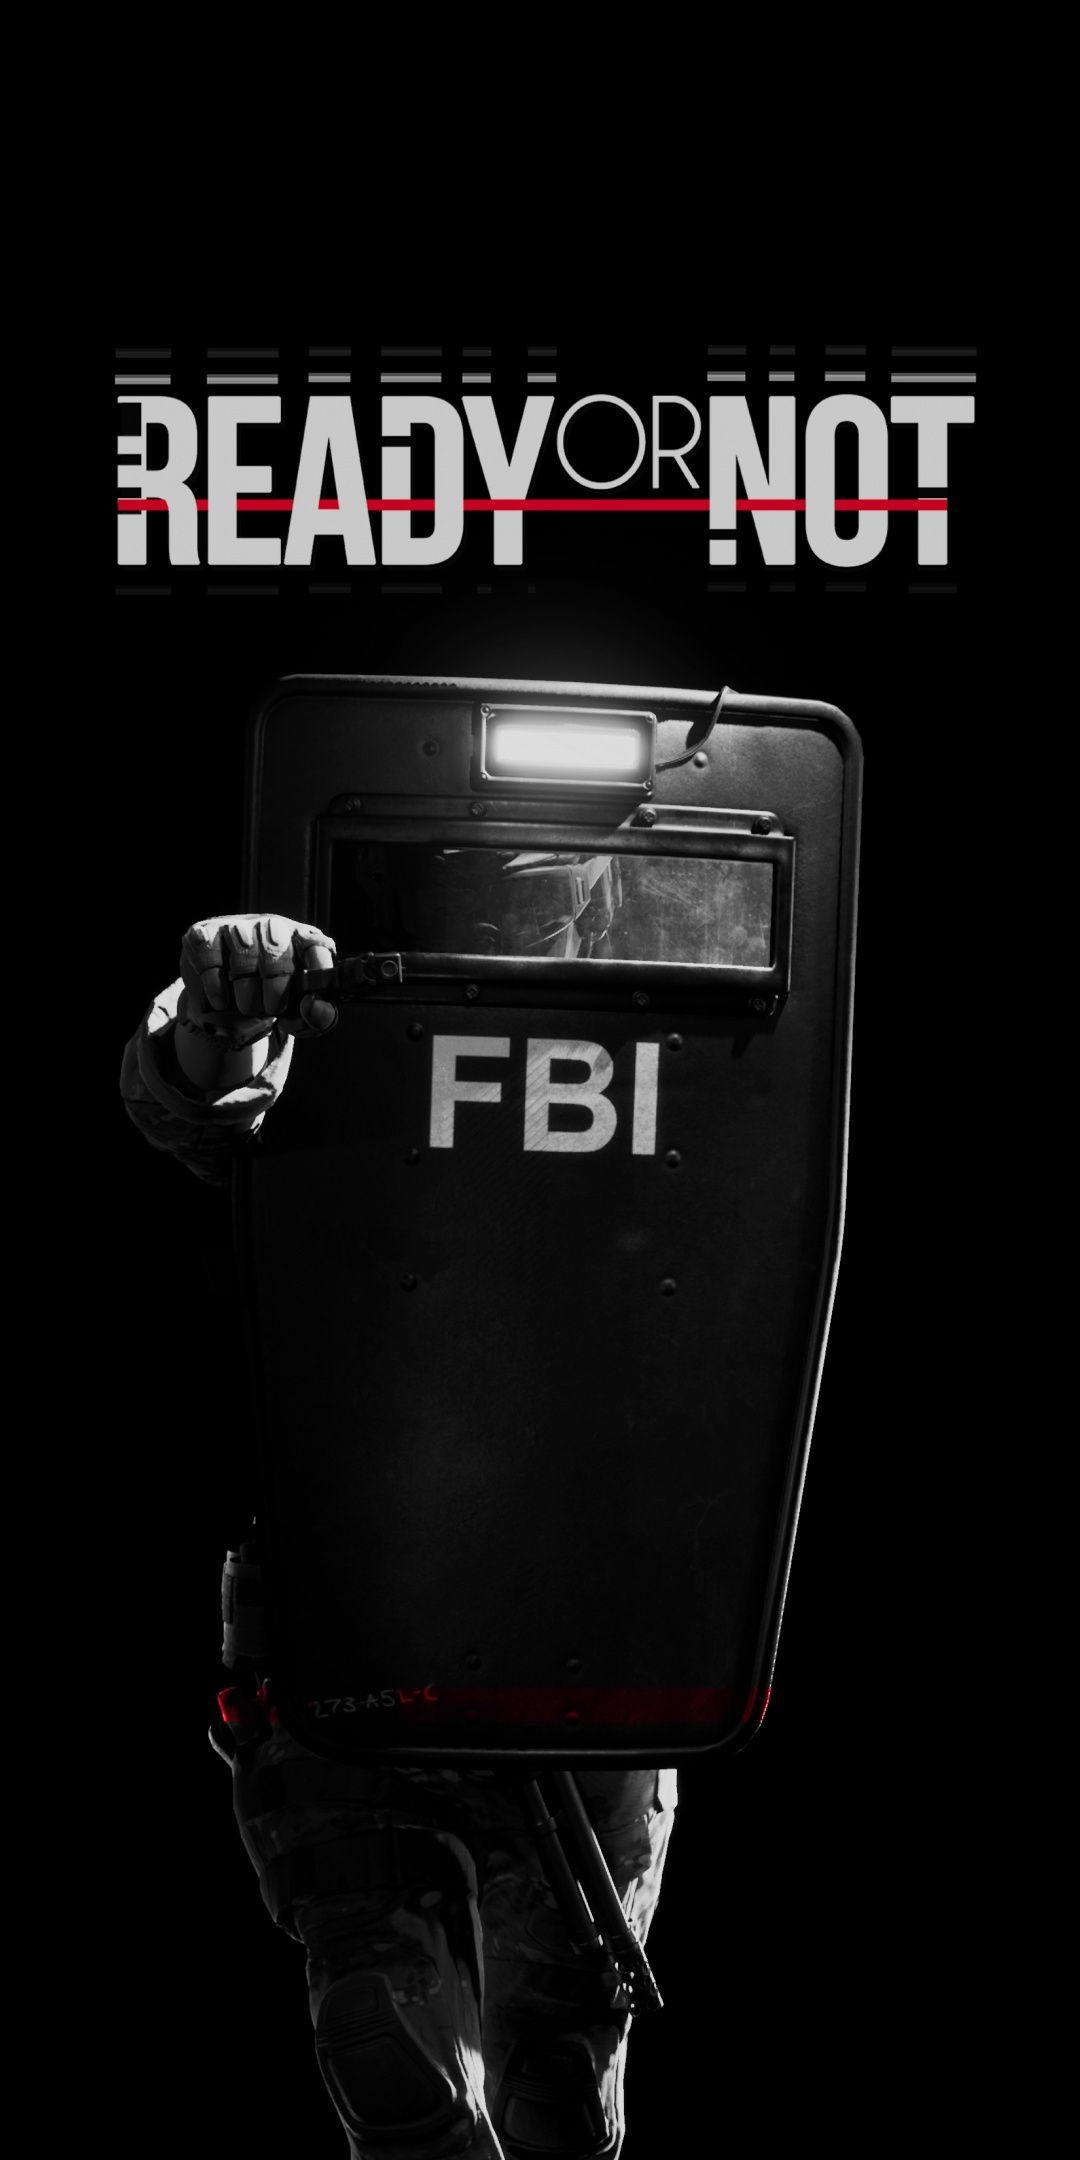 Ready Or Not, video game, FBI, police, dark Wallpaper. Planos de fundo, Jogos